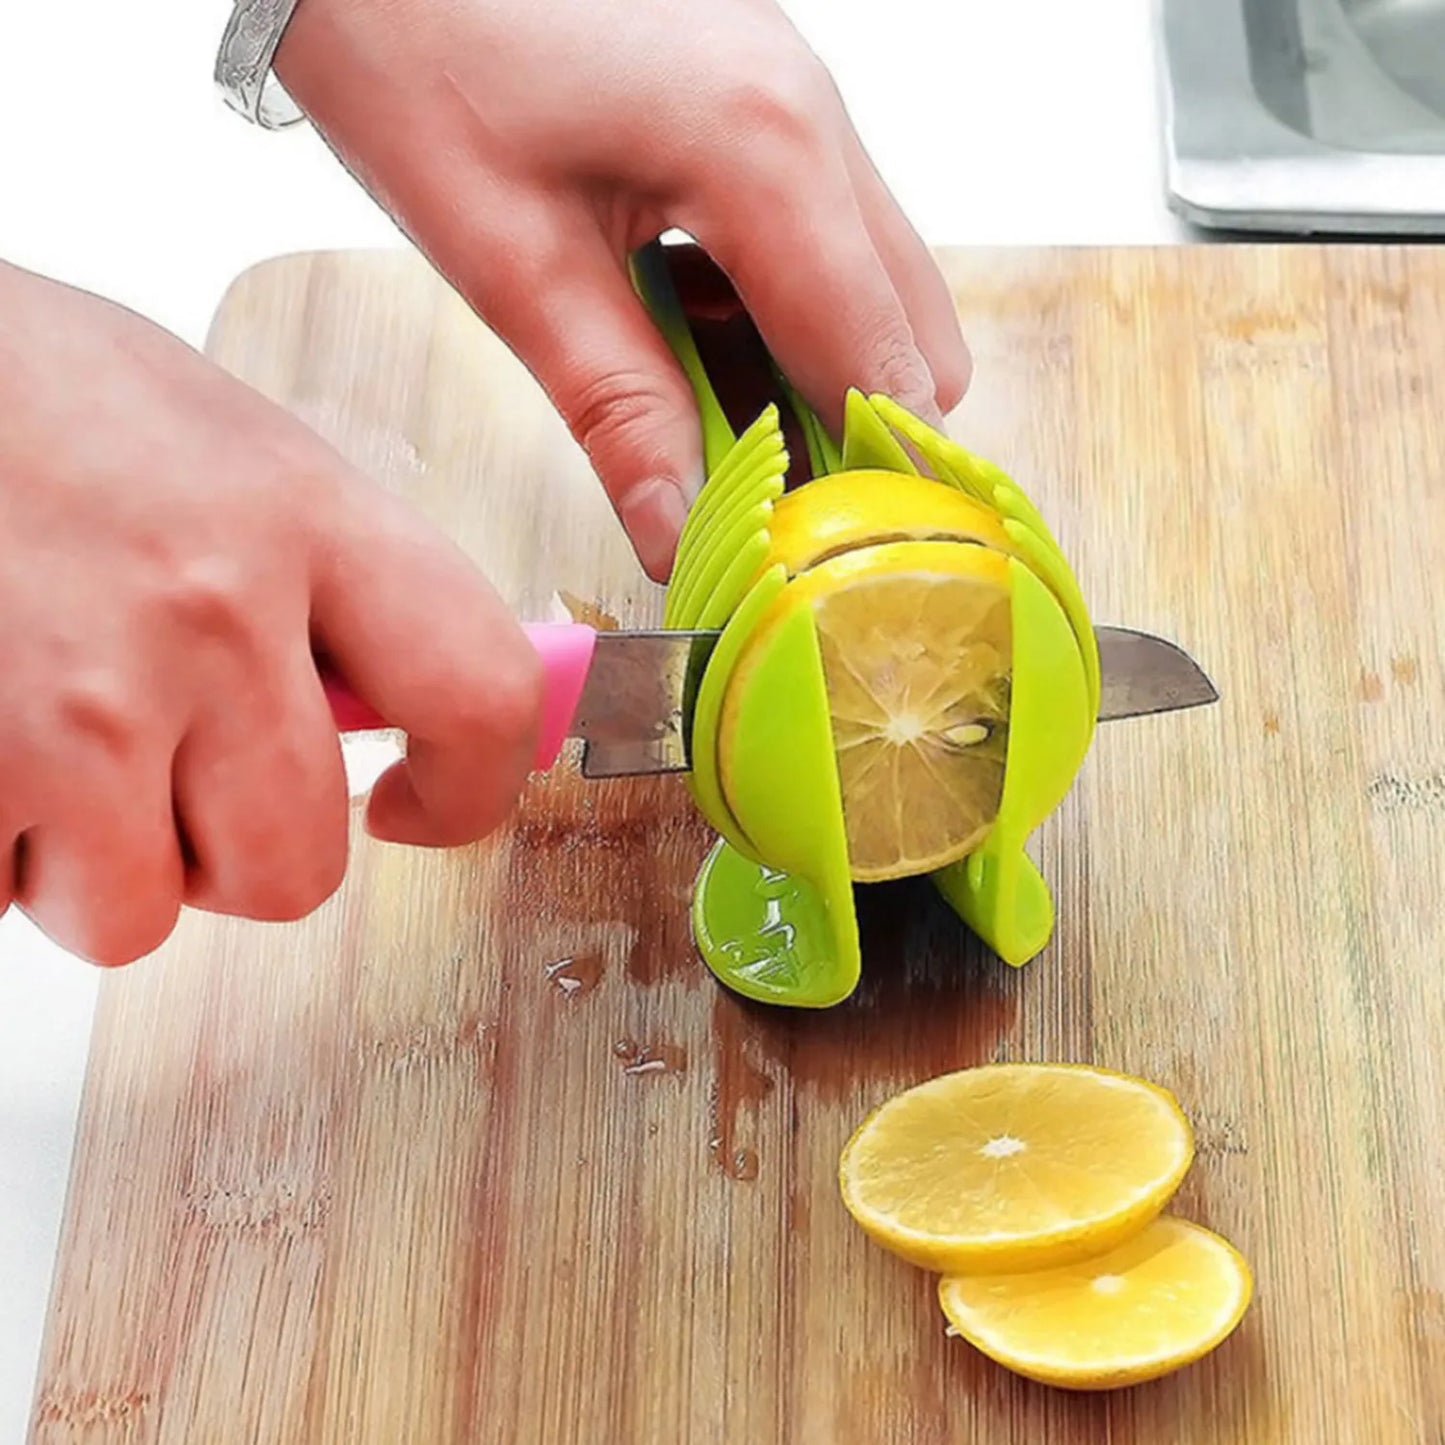 Plastic Kitchen Handheld Vegetable Slicer for Potato or Tomato